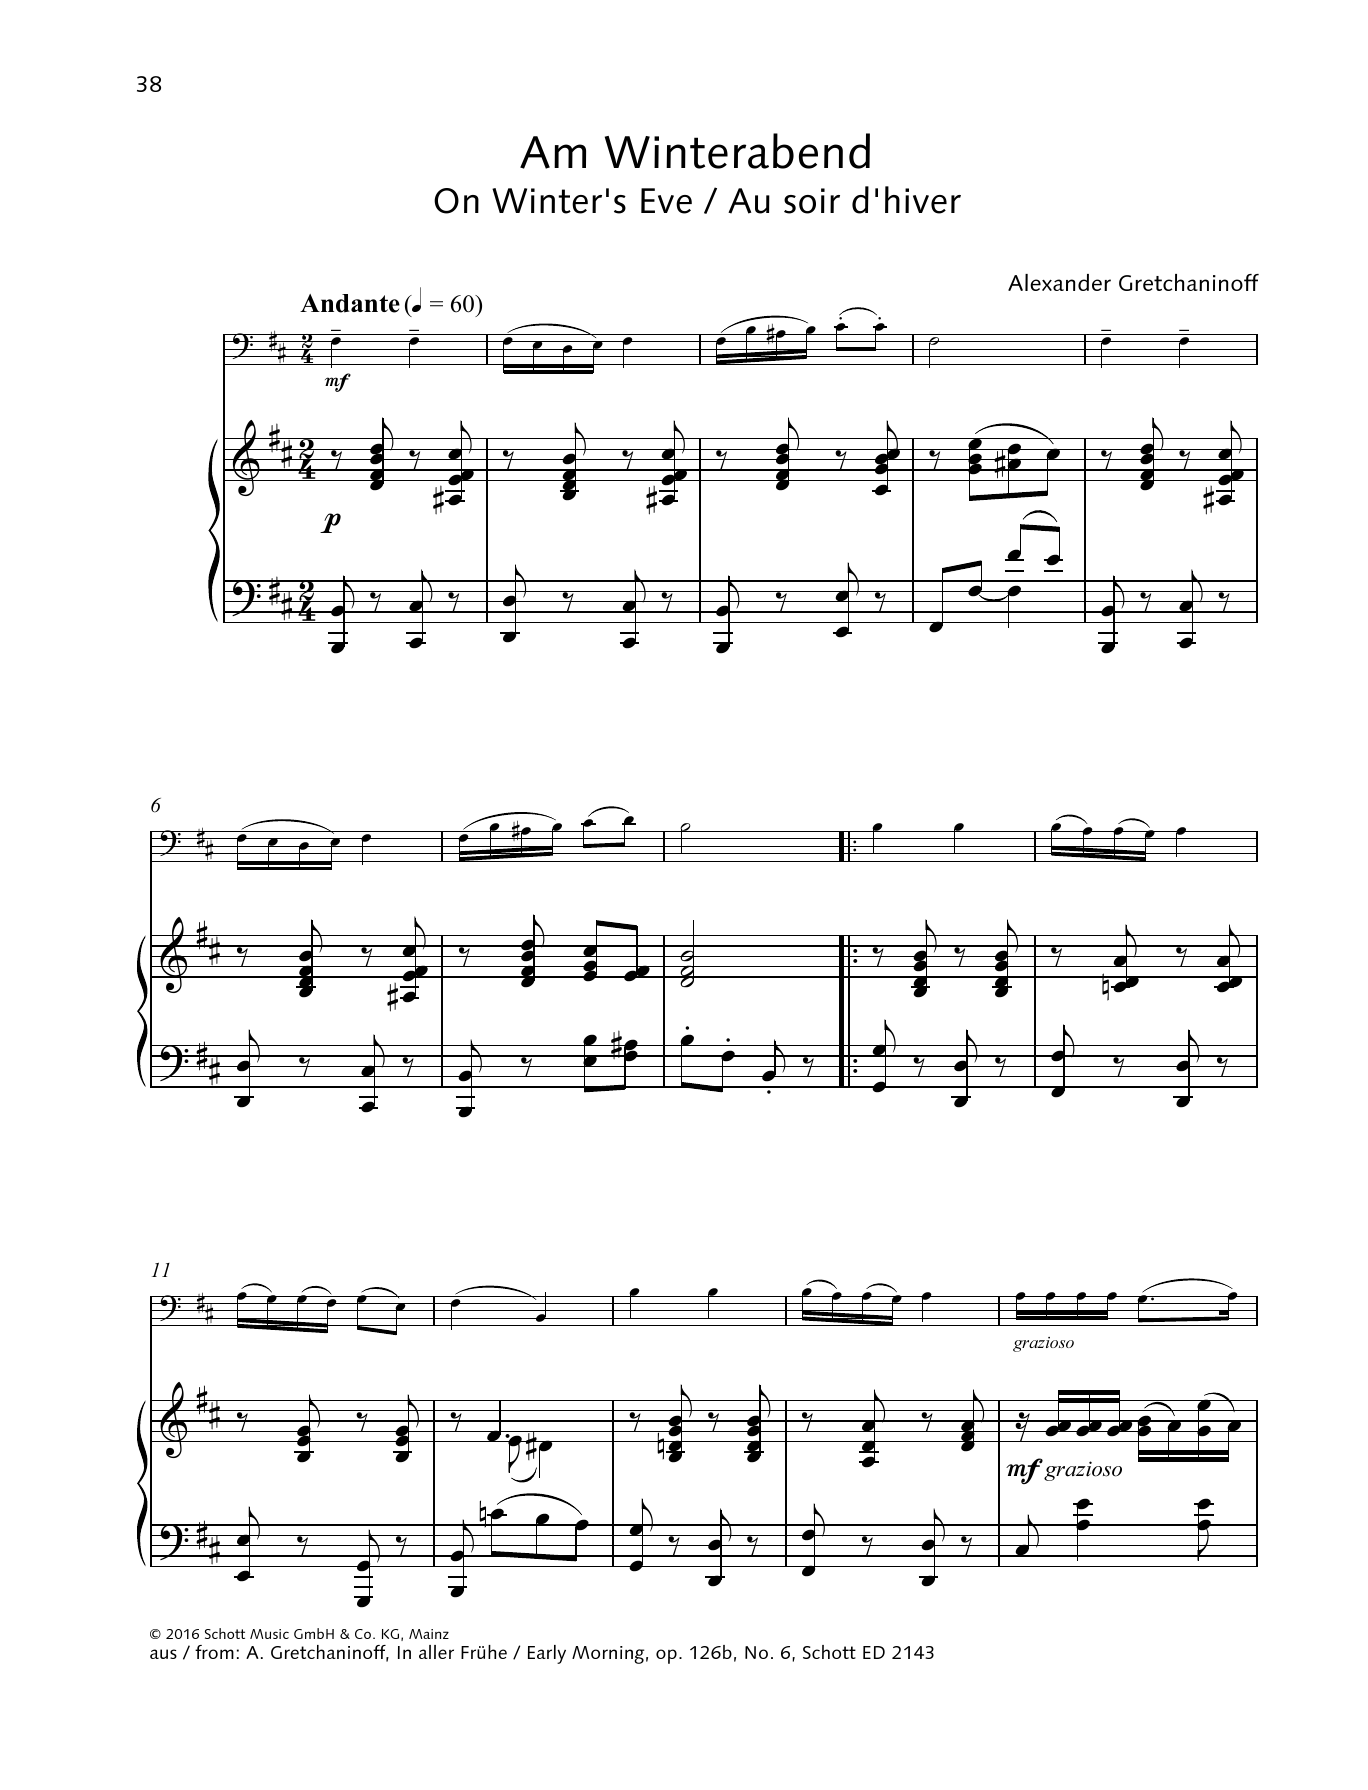 On Winter's Eve (String Solo) von Alexander Gretchaninoff